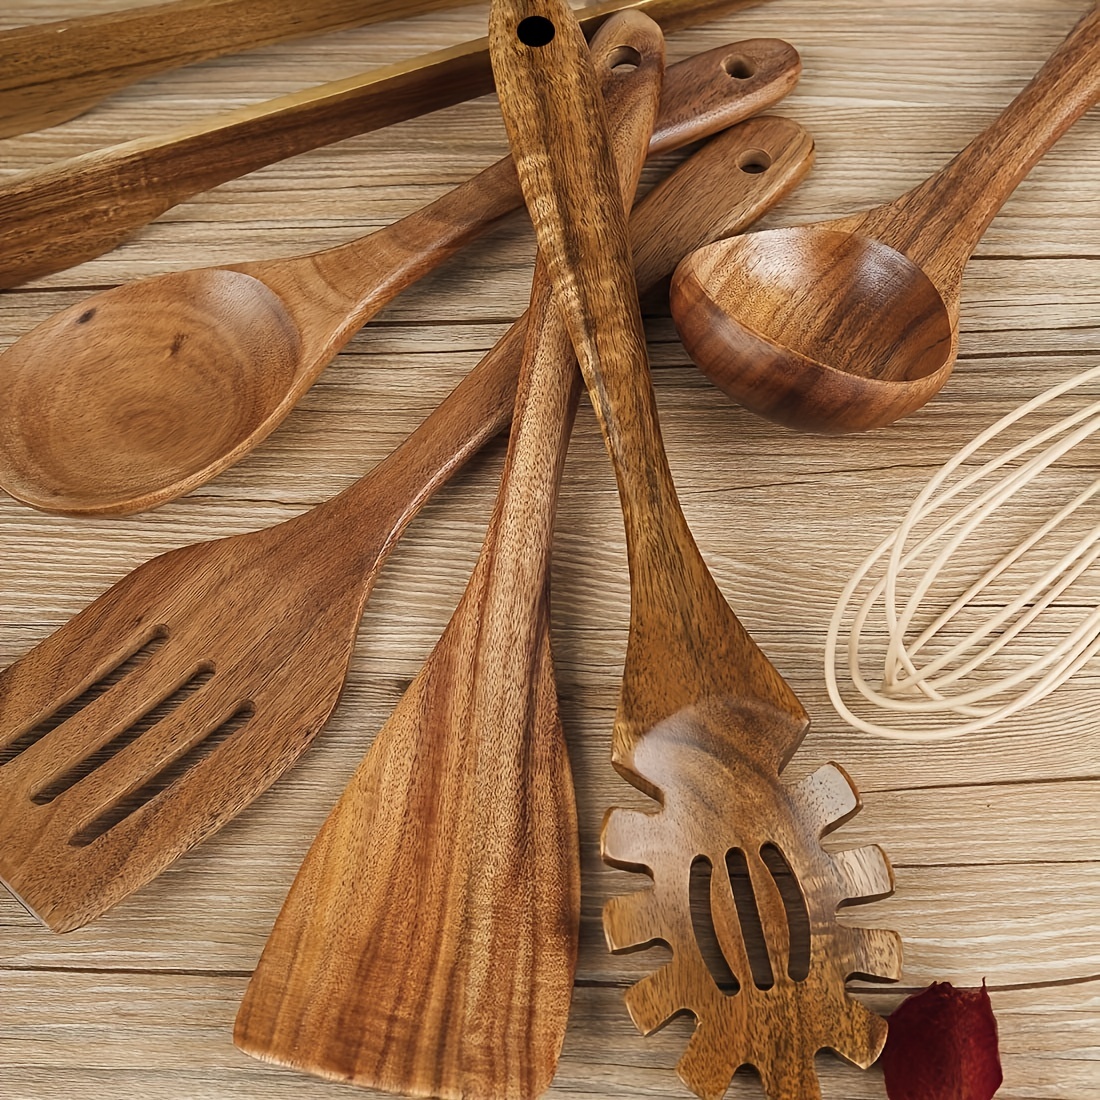 Juego de utensilios de cocina de madera, cucharas de madera para cocinar –  8 piezas de madera de coc…Ver más Juego de utensilios de cocina de madera